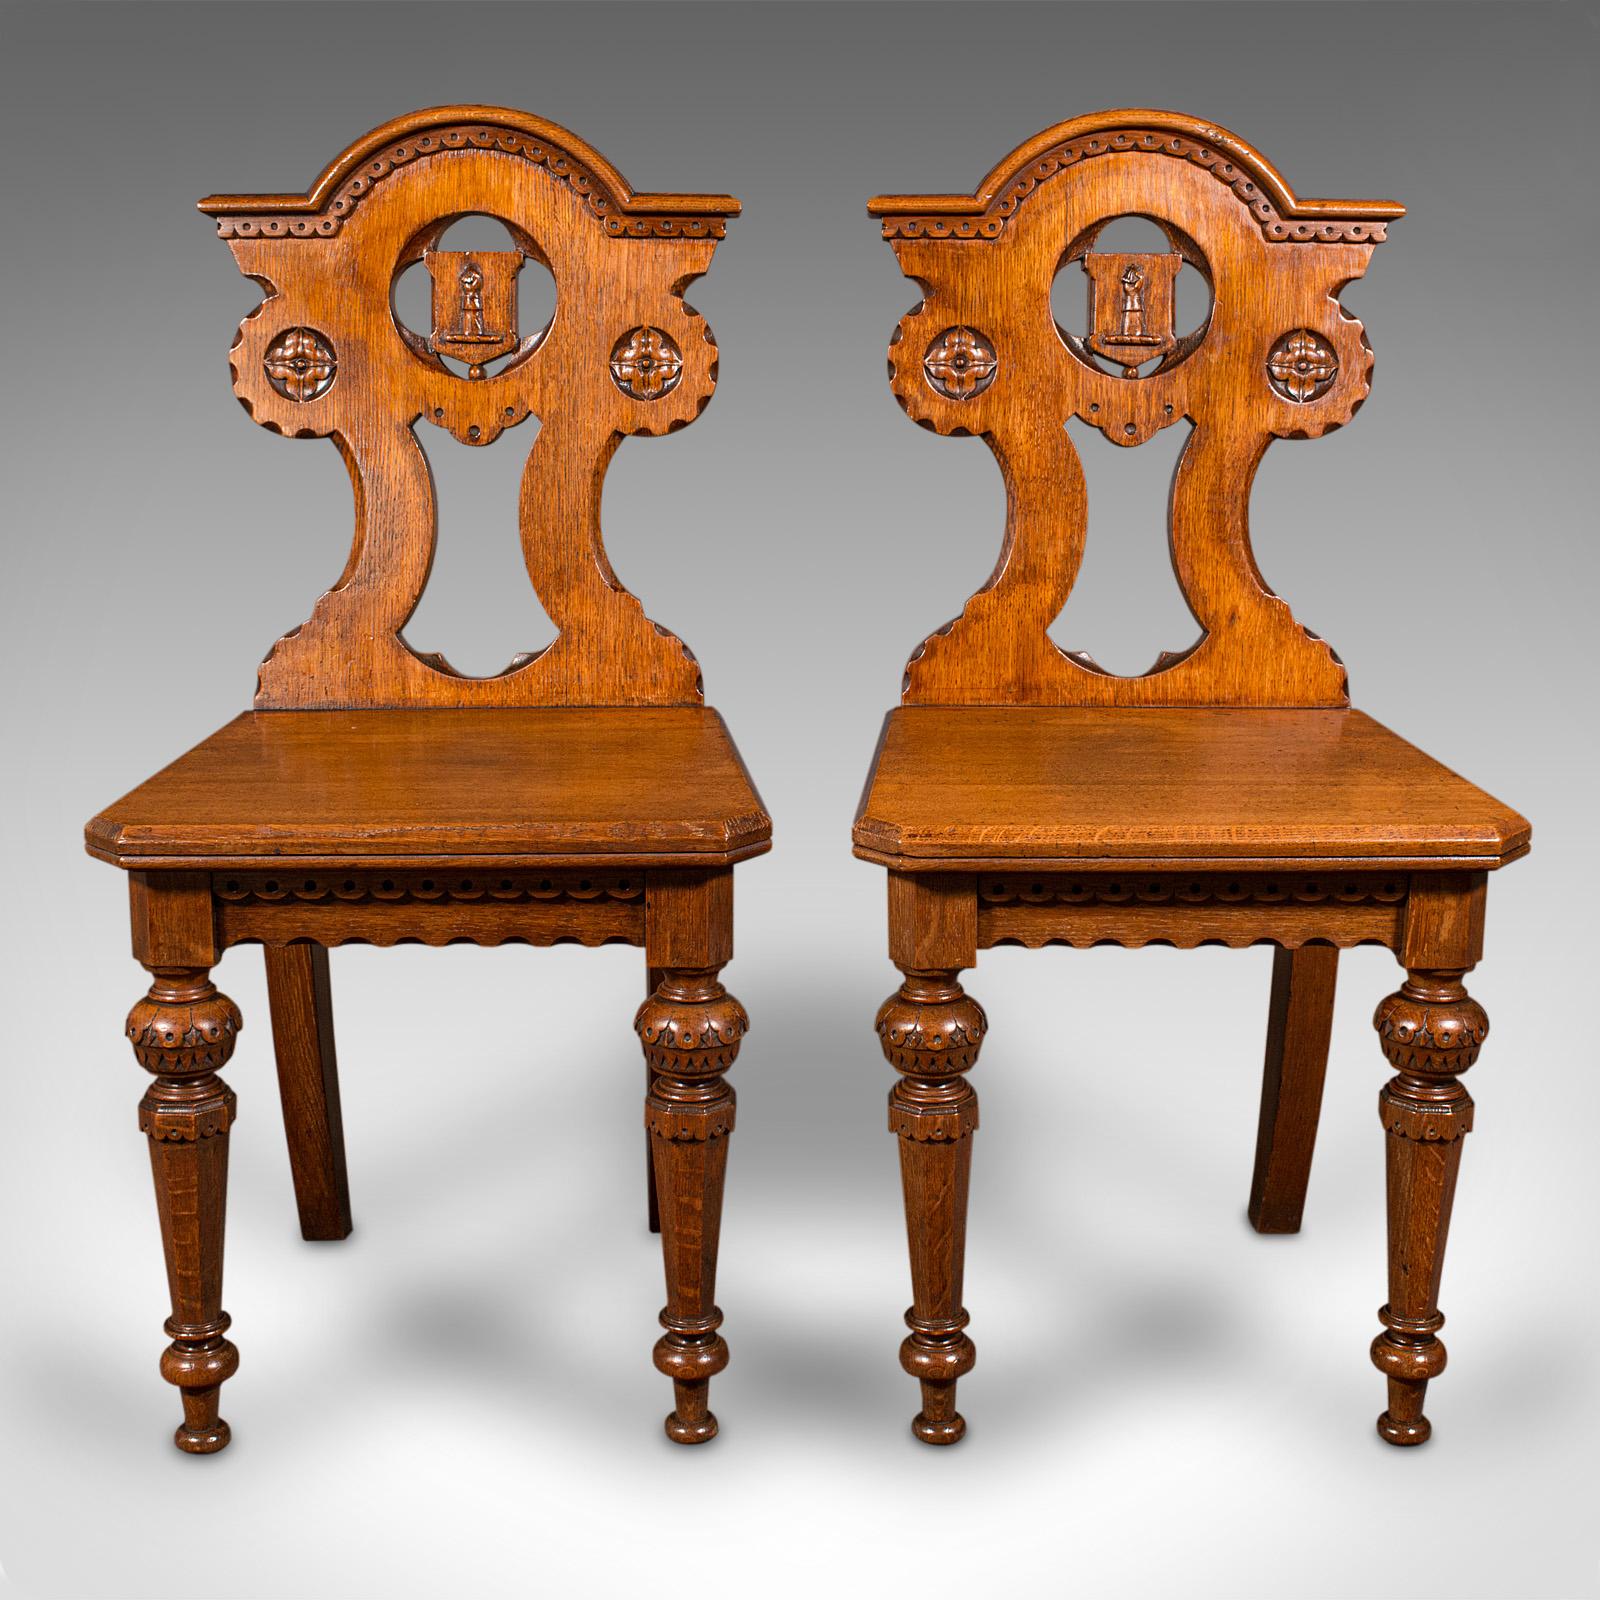 Il s'agit d'une paire de chaises d'entrée antiques. Siège écossais en chêne de style Arts & Crafts, datant de la fin de la période victorienne, vers 1890.

Remarquable et exceptionnel, un régal pour les plus grandes salles de réception.
Présentant